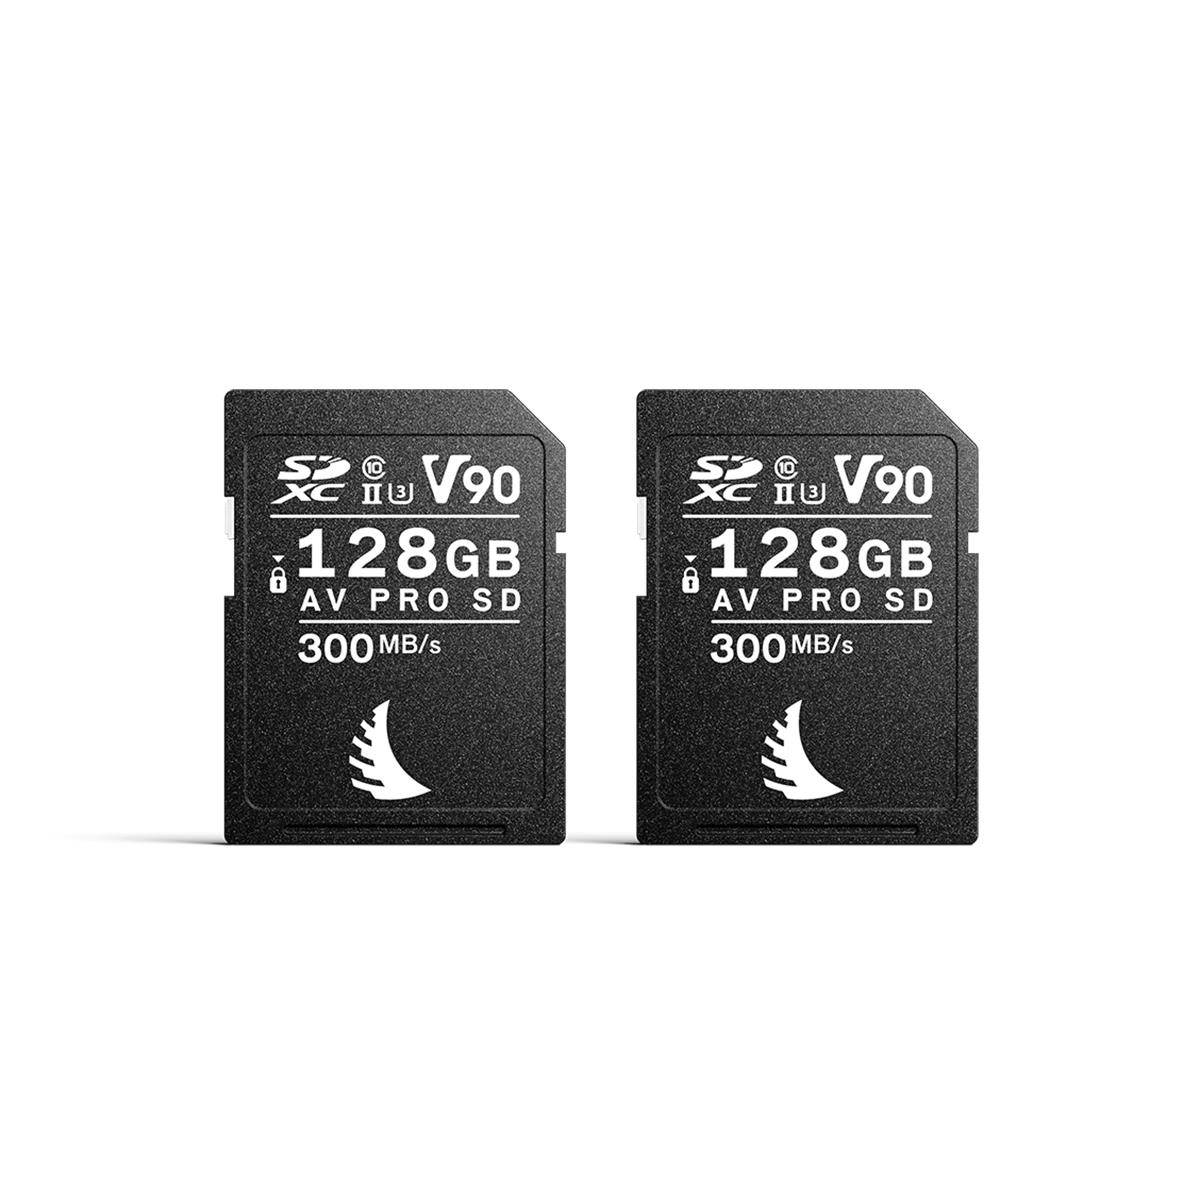 Image of Angelbird MatchPack AV PRO SD MK2 V90 128GB SDXC Memory Card for Canon